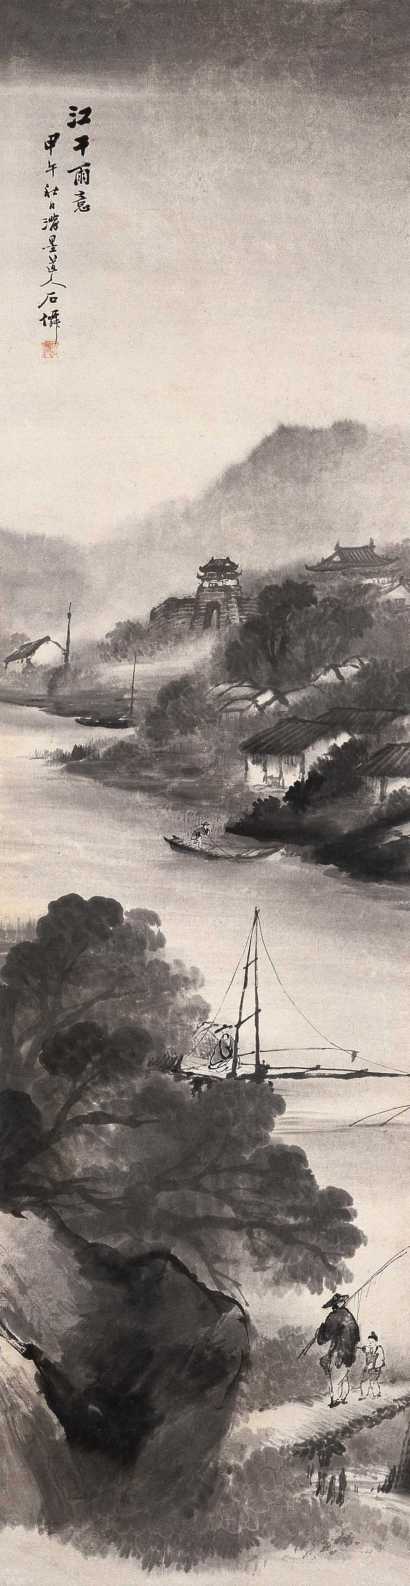 吴石僊 甲午（1894年）作 江干雨意 立轴